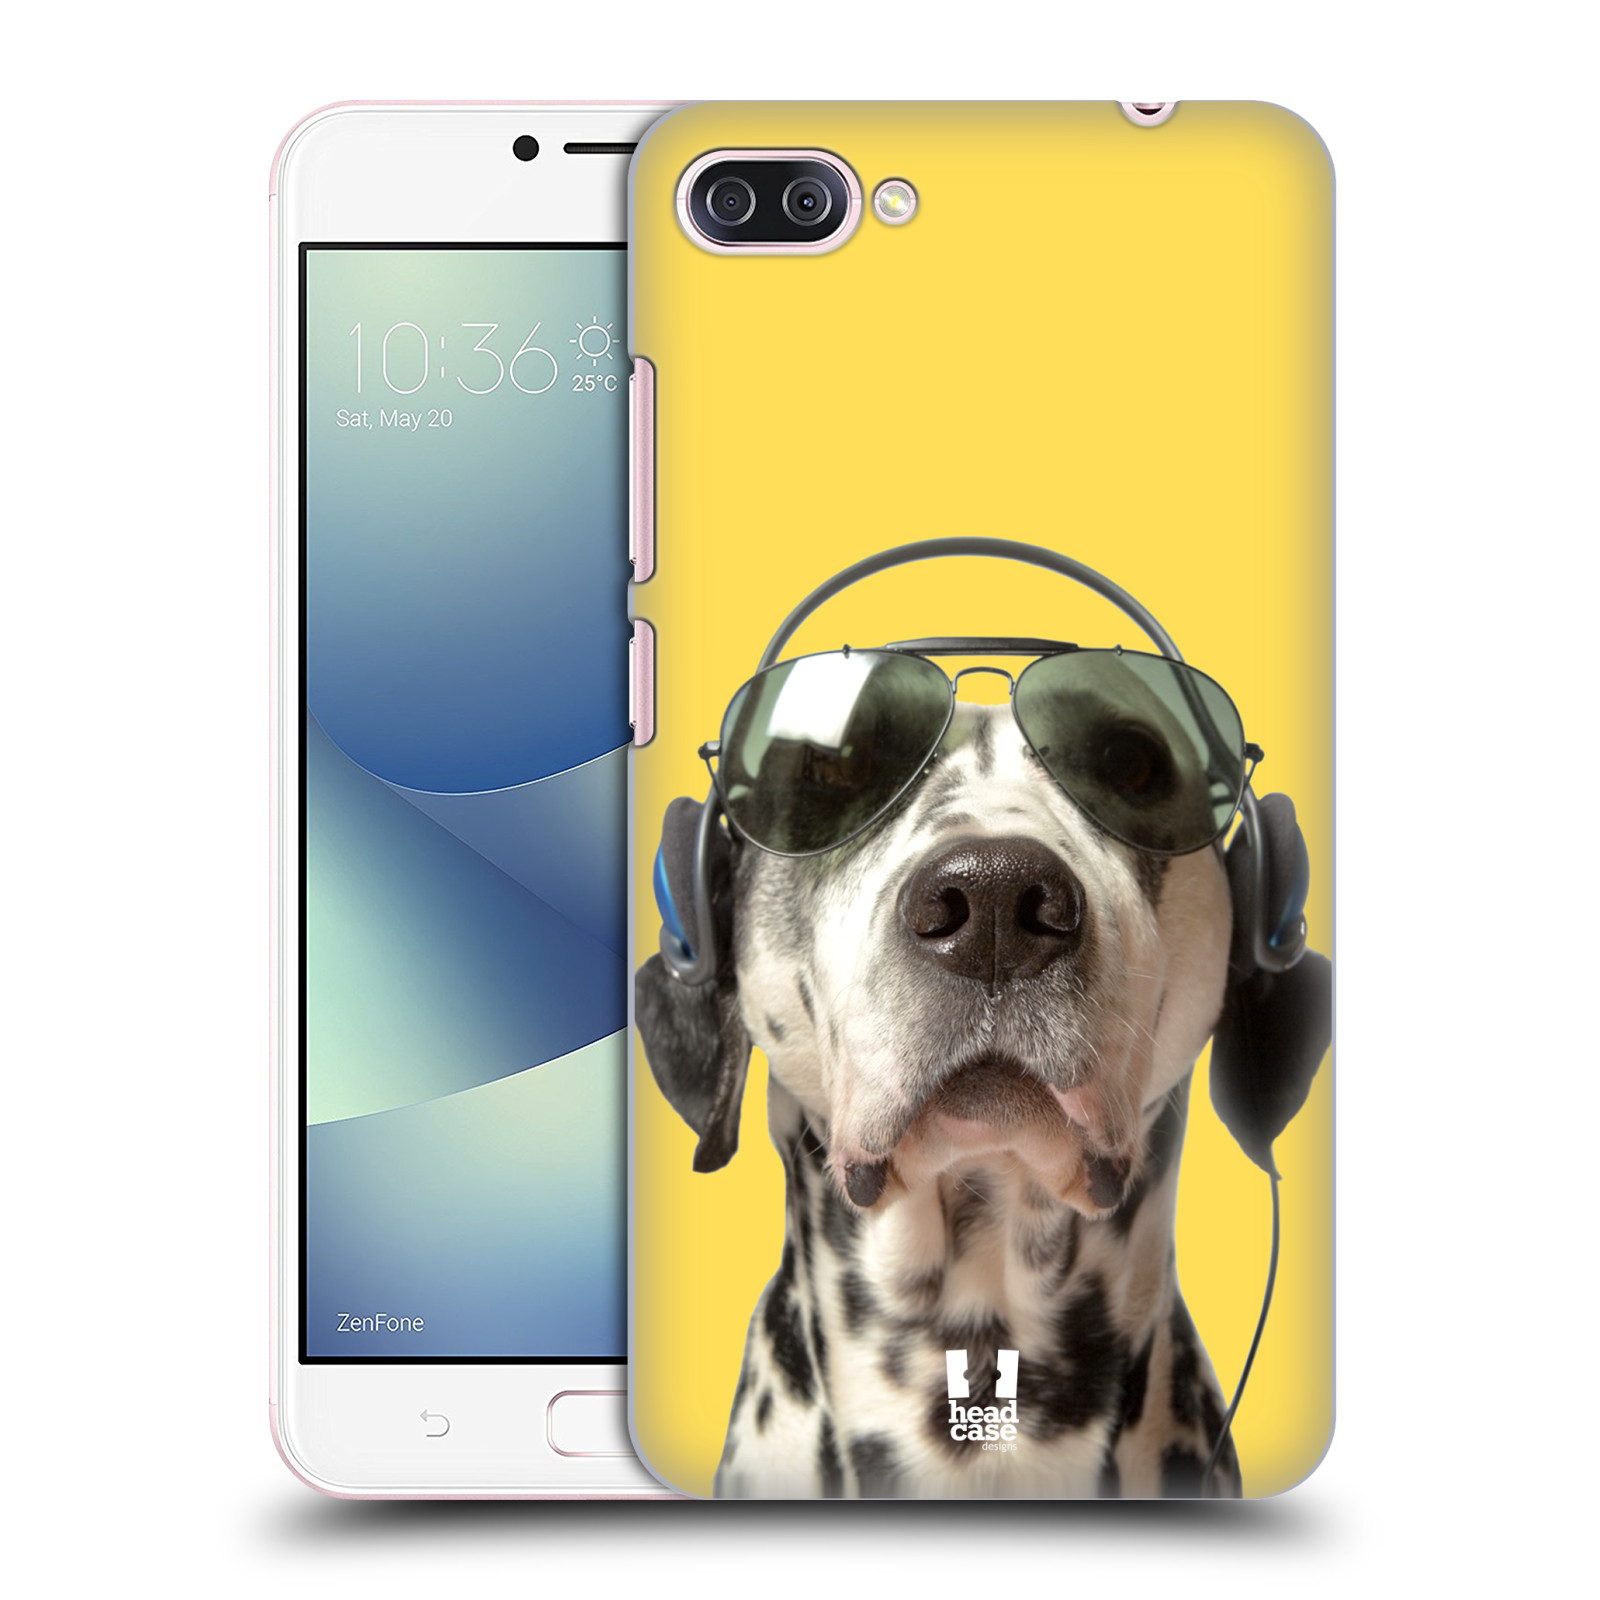 HEAD CASE plastový obal na mobil Asus Zenfone 4 MAX ZC554KL vzor Legrační zvířátka dalmatin se sluchátky žlutá